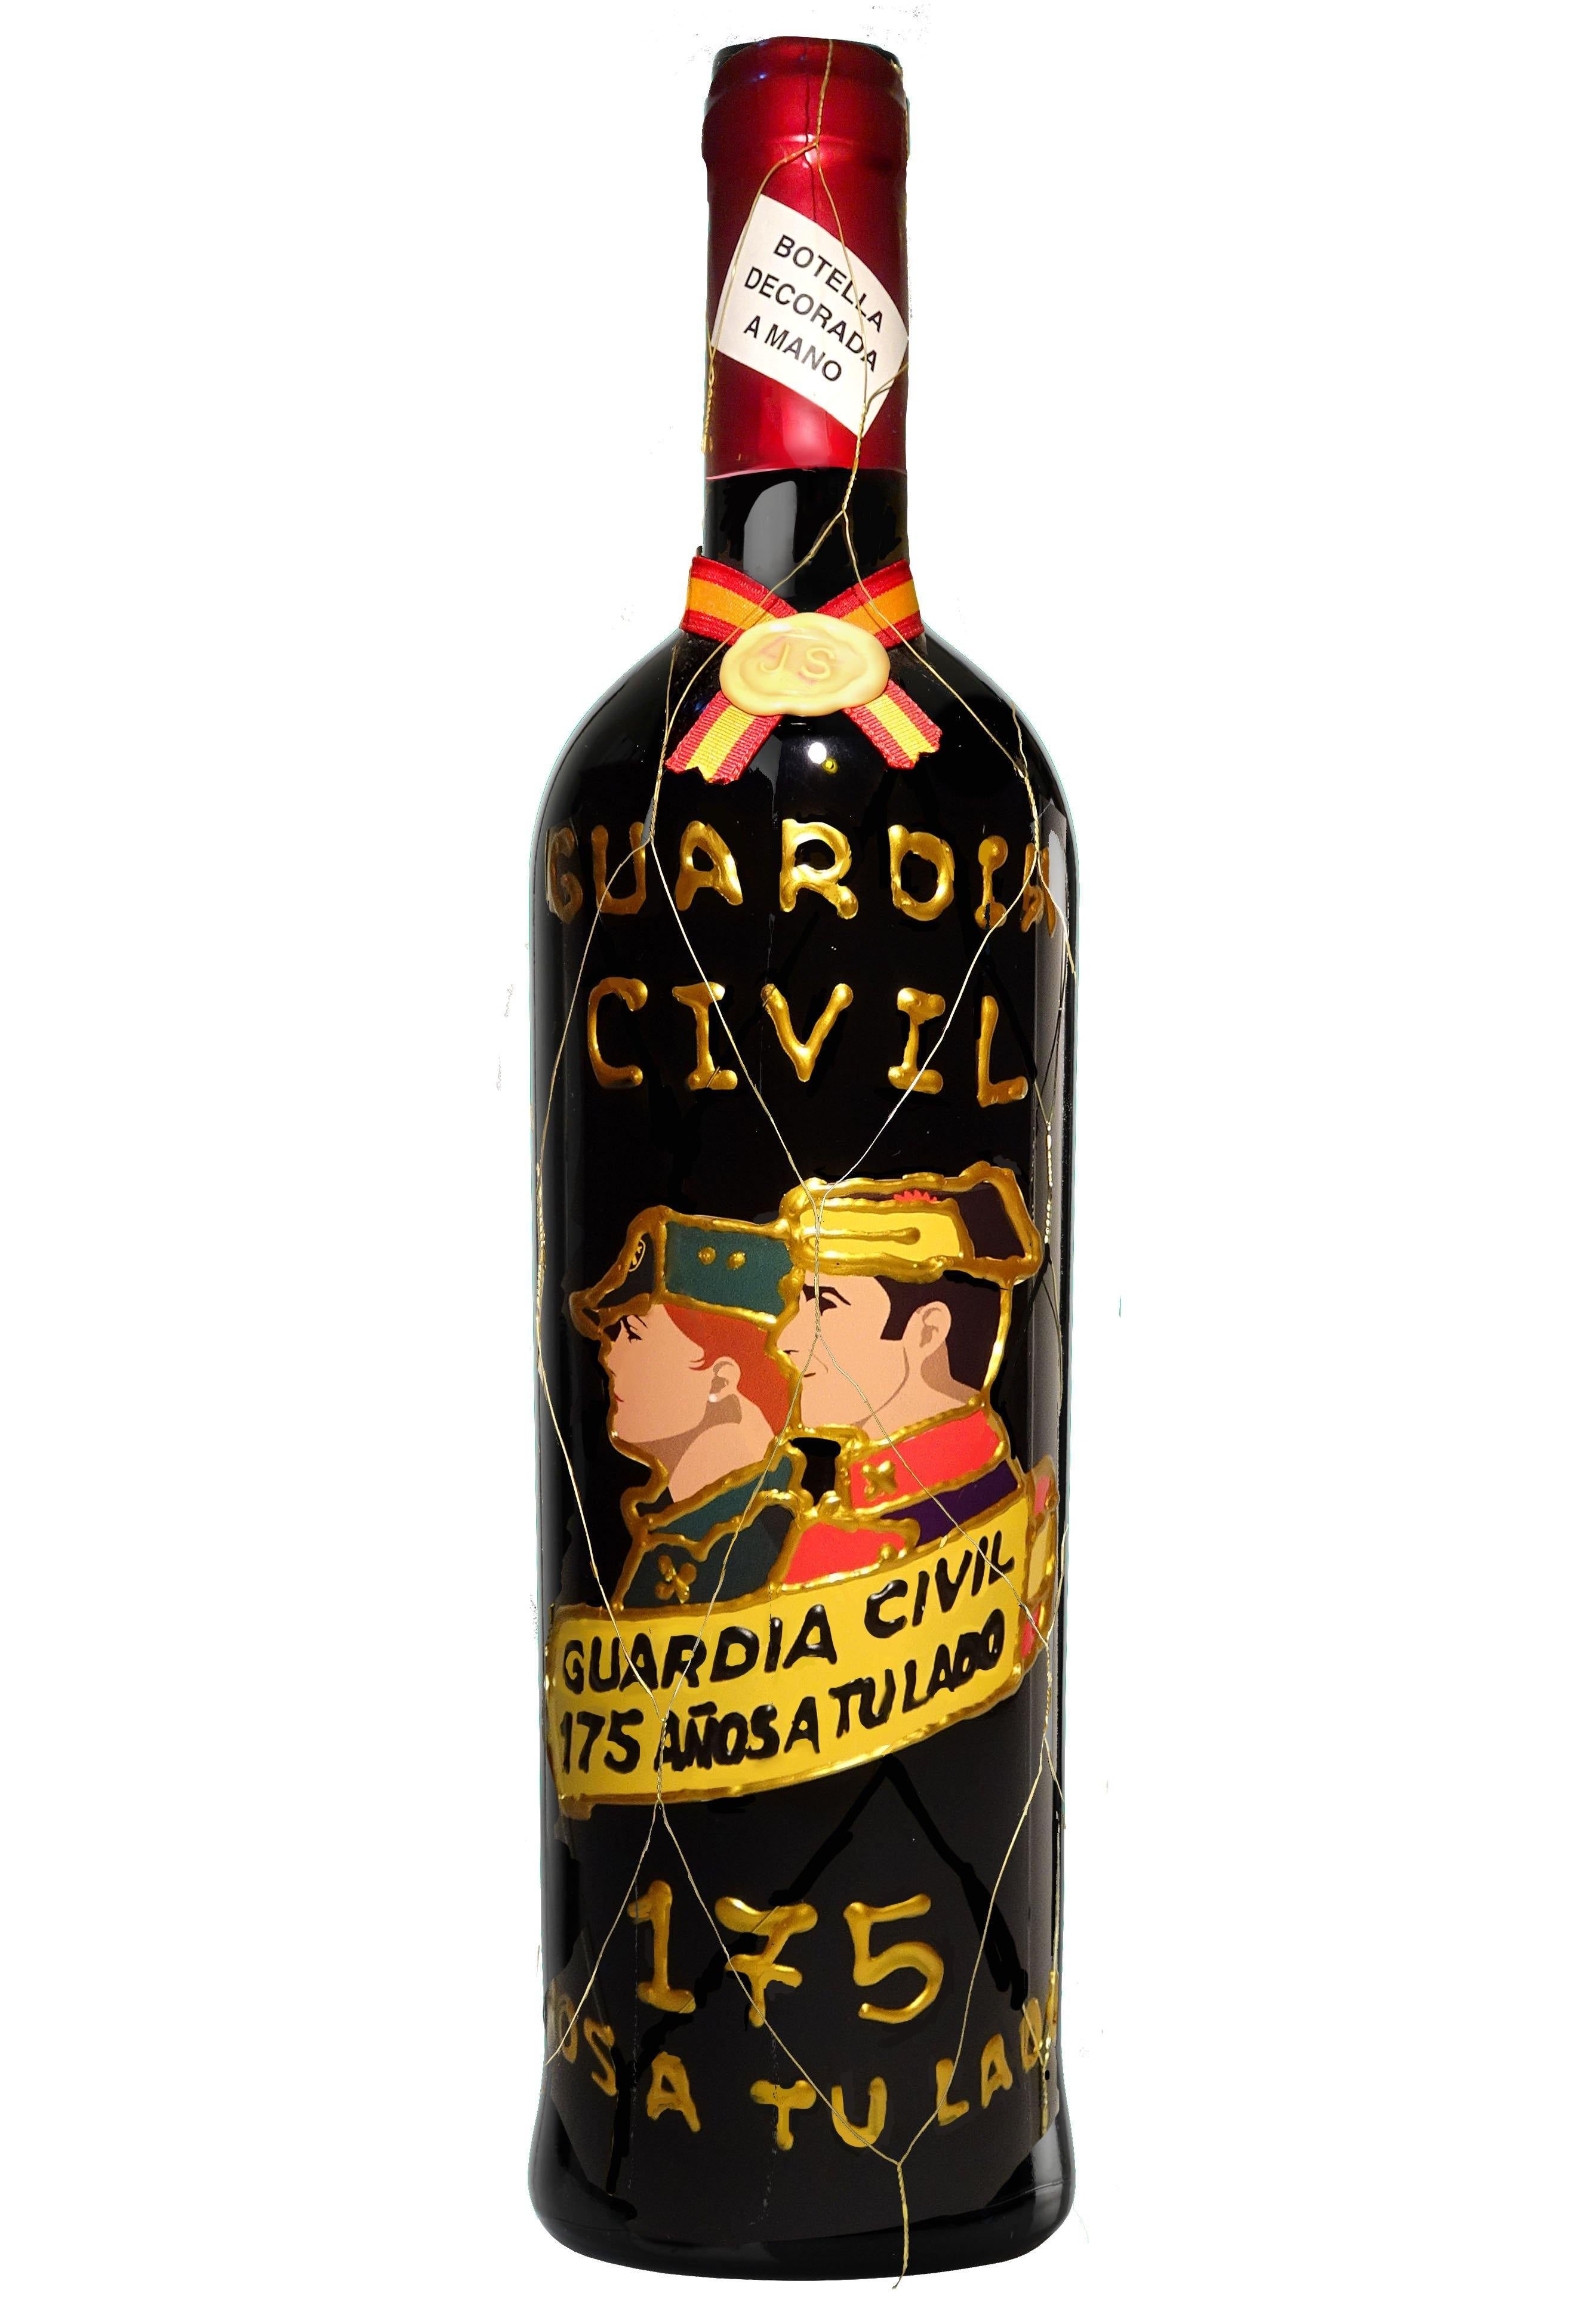 Botella de Vino Guardia Civil (175 Aniversario) - Delampa